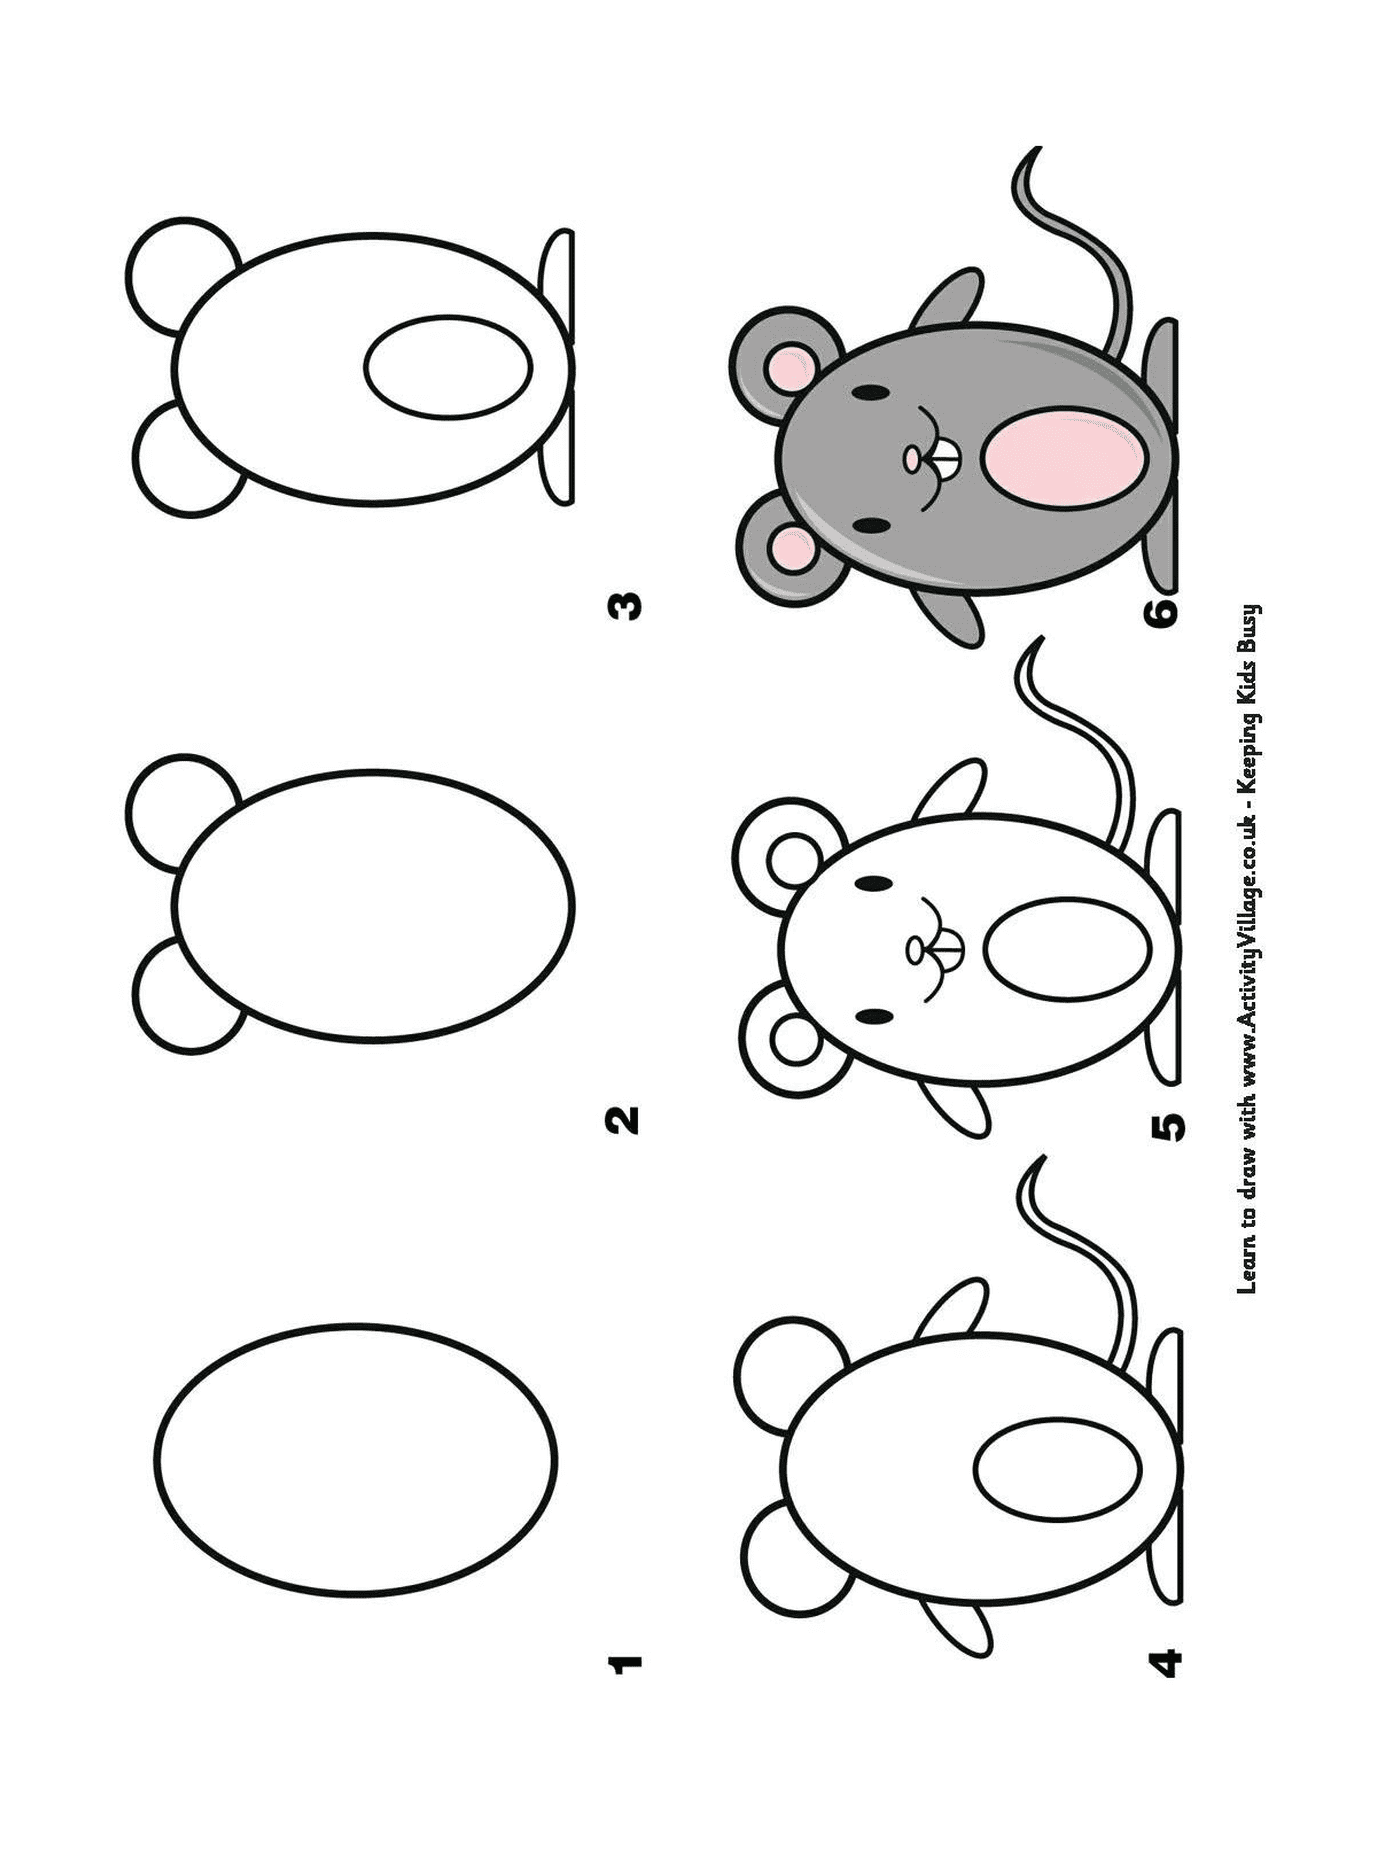  Cómo dibujar un ratón paso a paso 